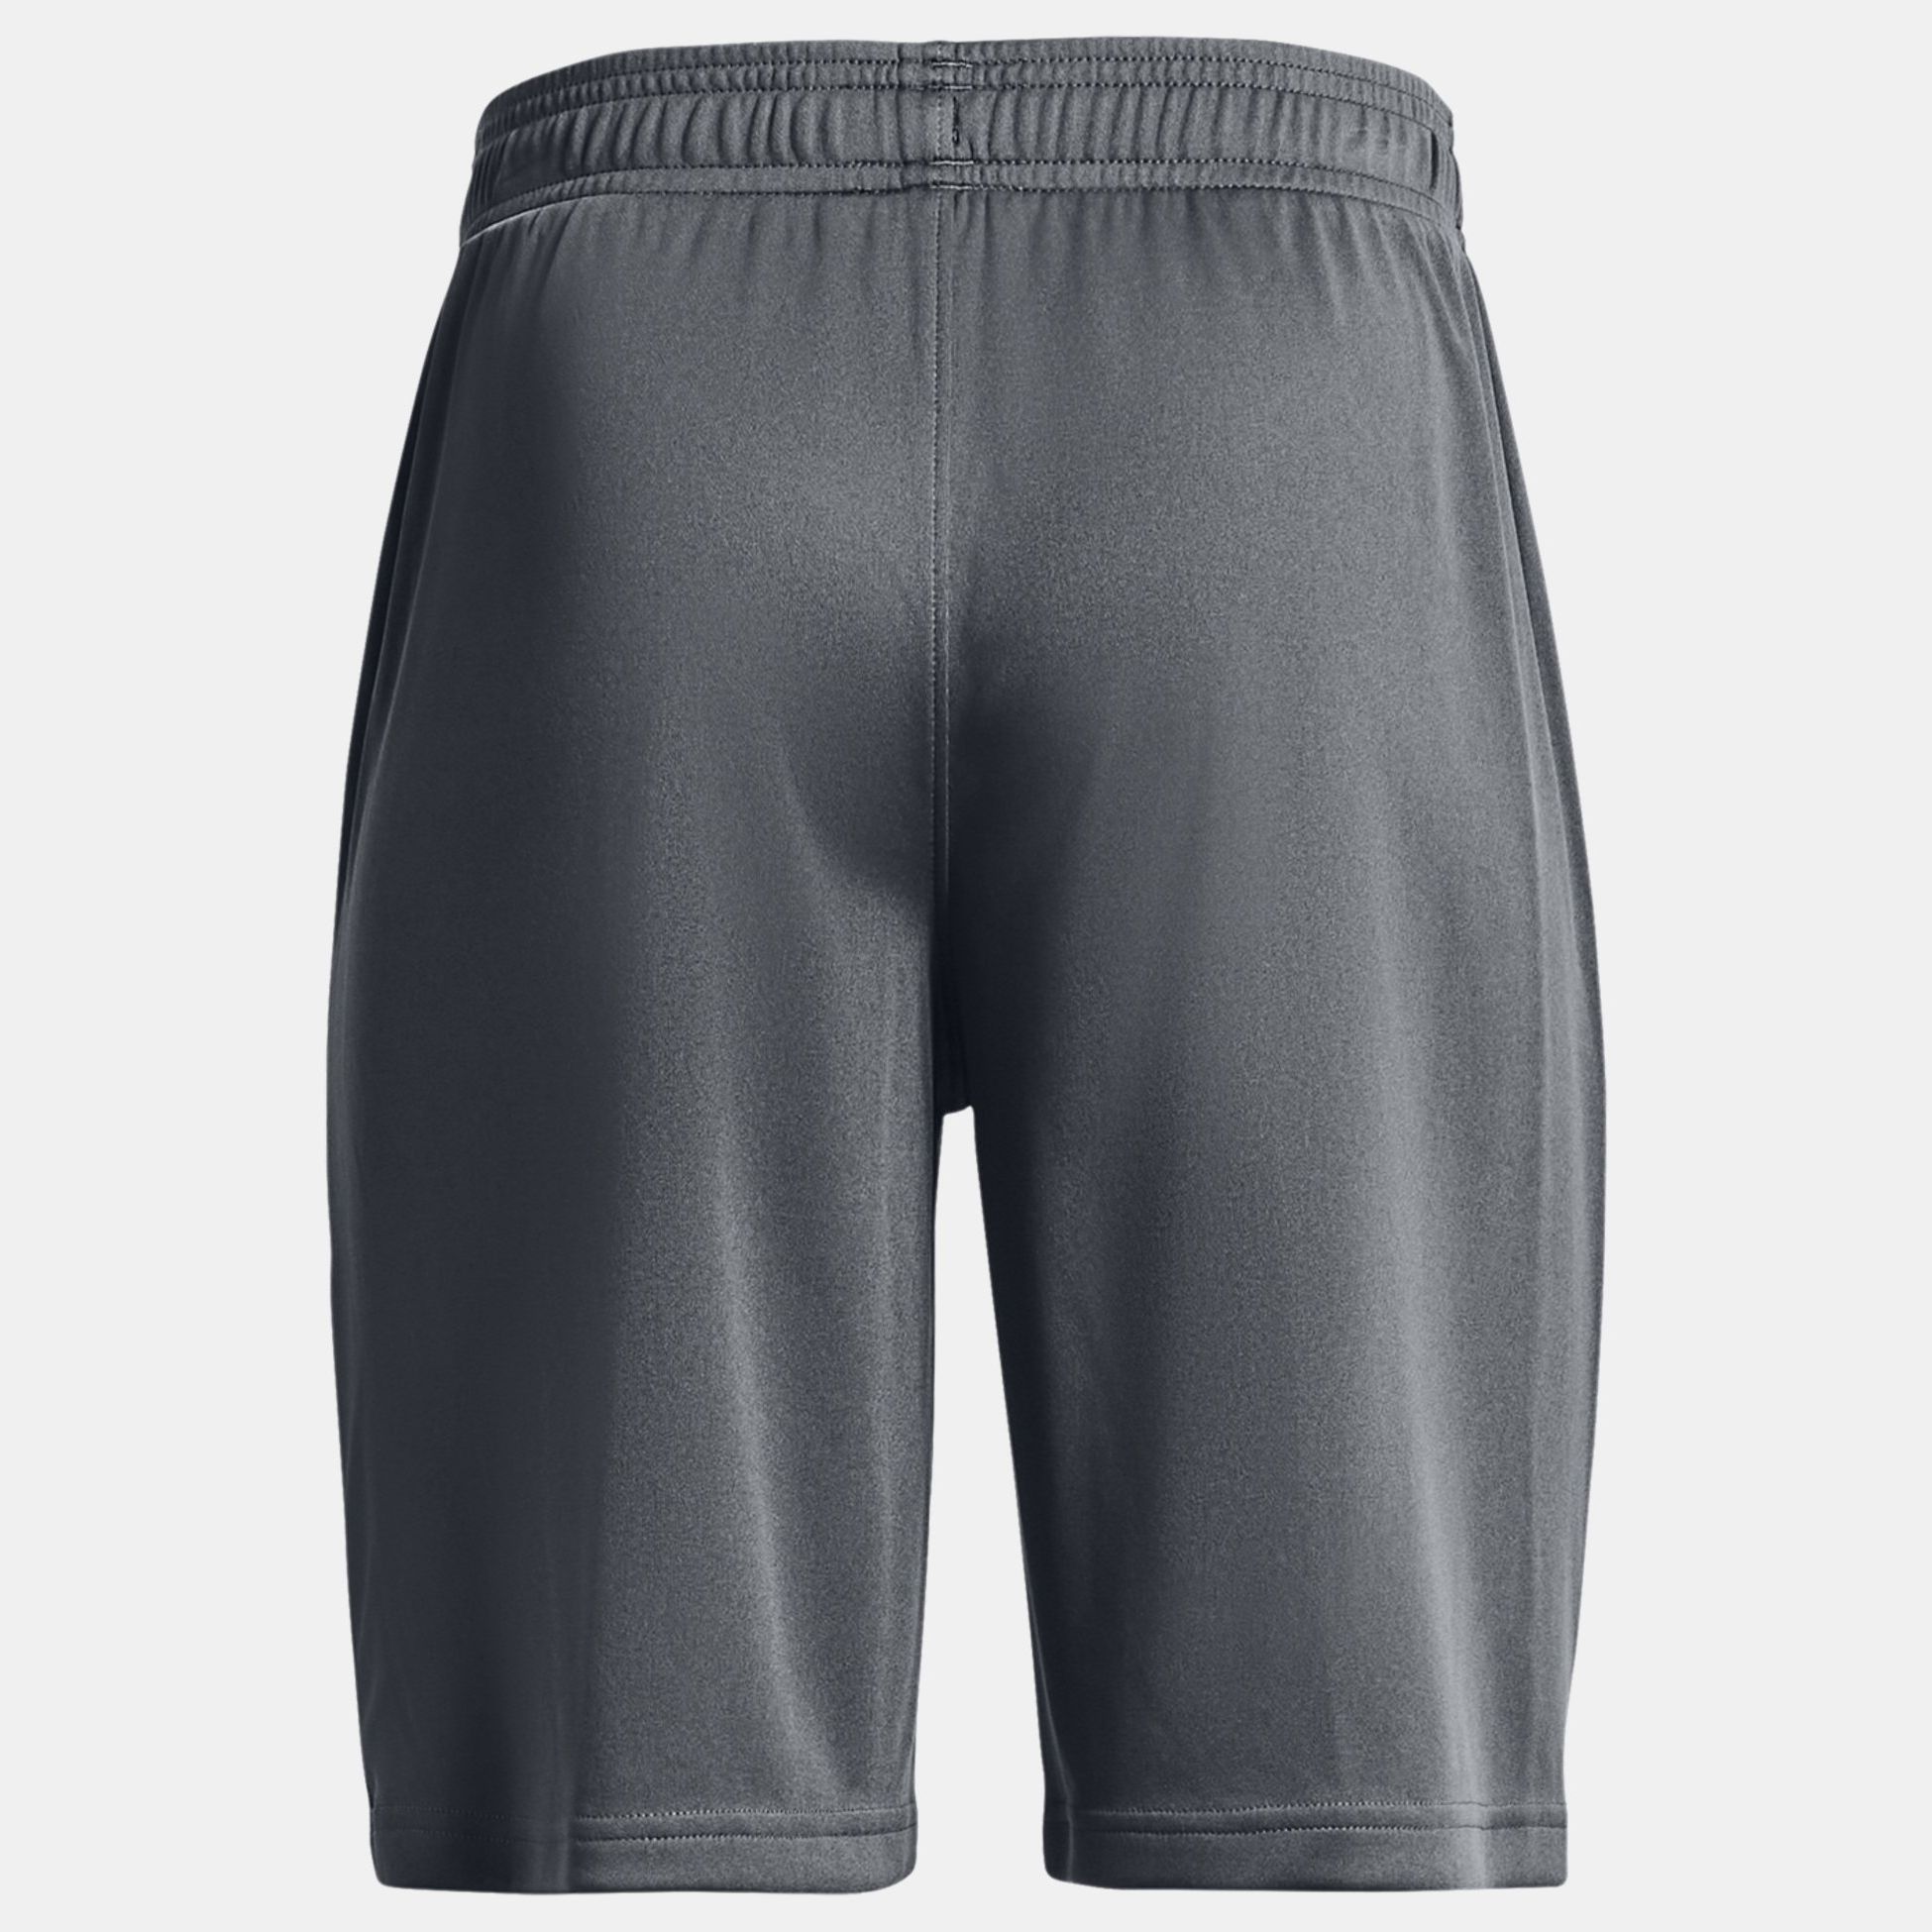 Shorts -  under armour UA Prototype 2.0 Wordmark Shorts 1818